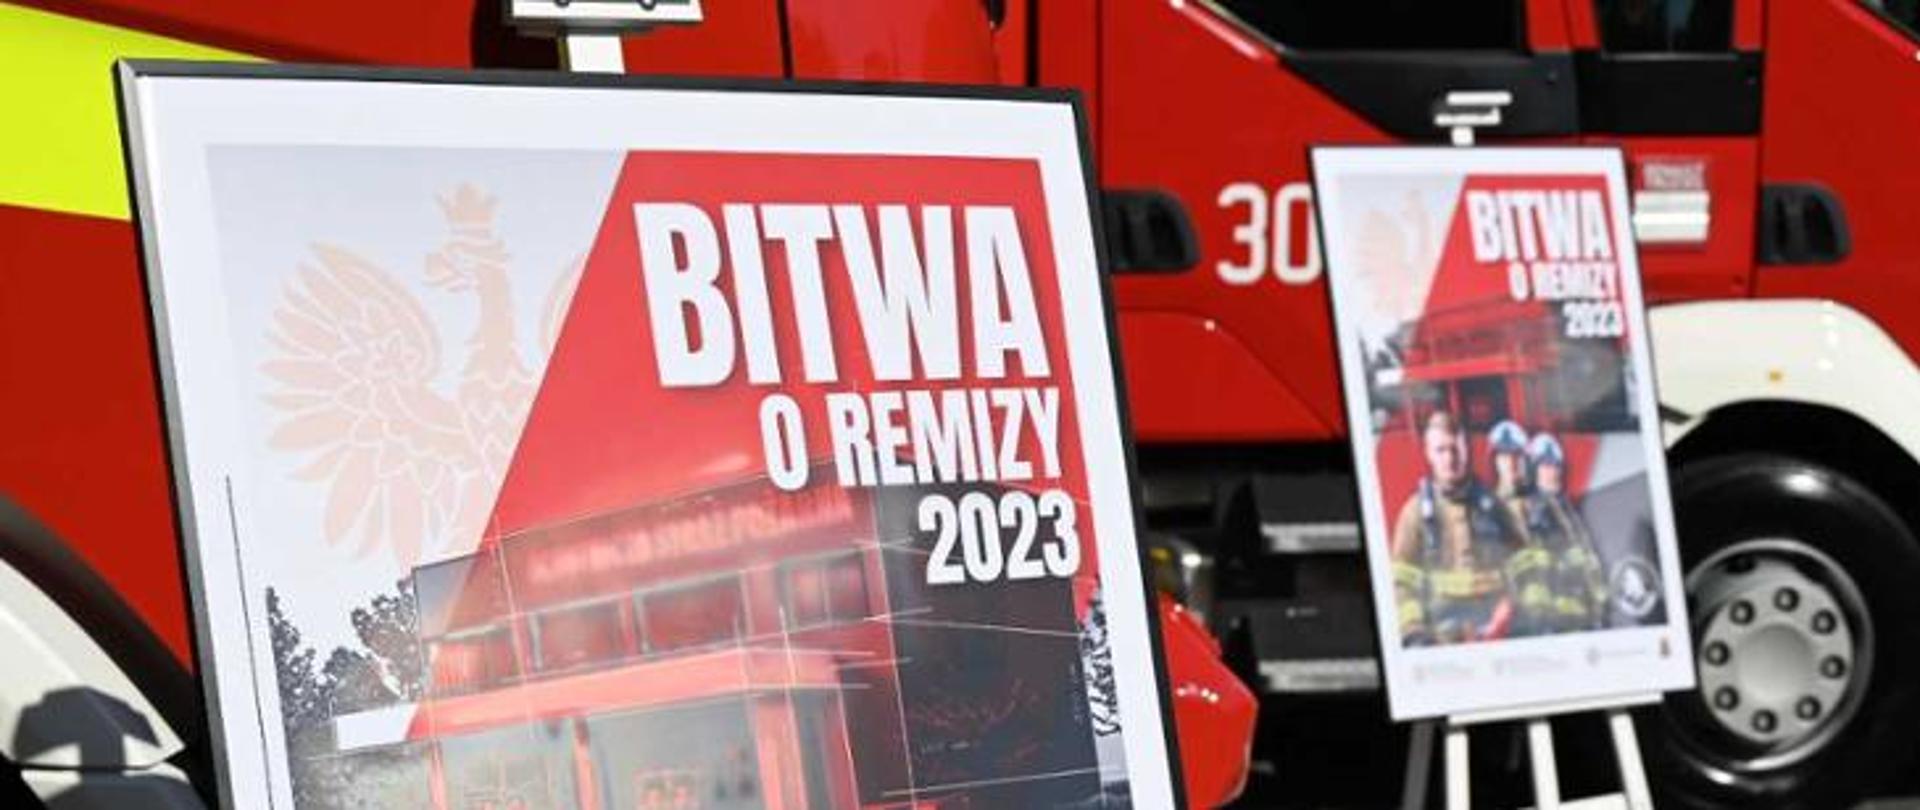 na zdjęciu widać plakat akcji Bitwa o Remizy 2023 na tle samochodu strażackiego